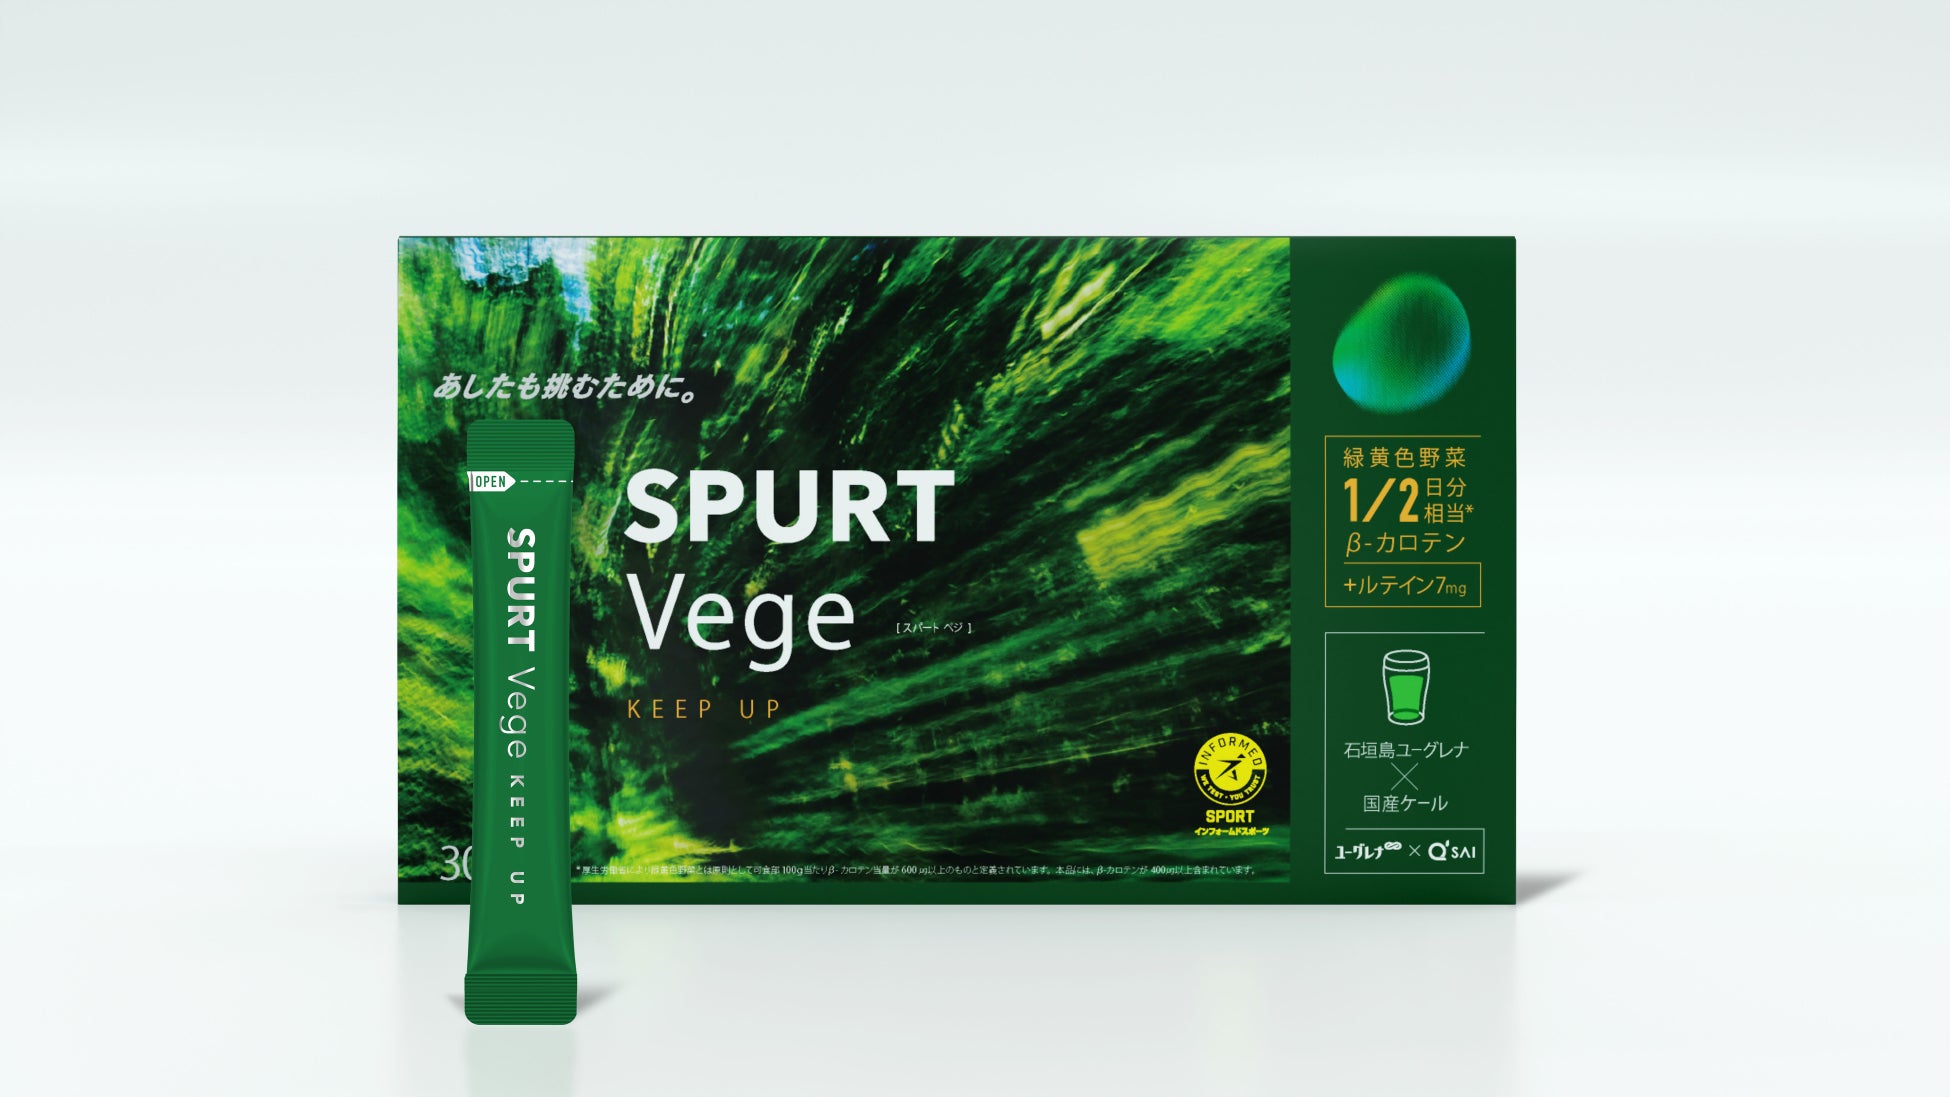 アンチドーピング認証も取得！持続力のあるカラダをサポートし、不足しがちな緑黄色野菜の栄養素※1を補うスポーツ用粉末飲料「SPURT Vege -KEEP UP-」を、5月13日（月）より新発売